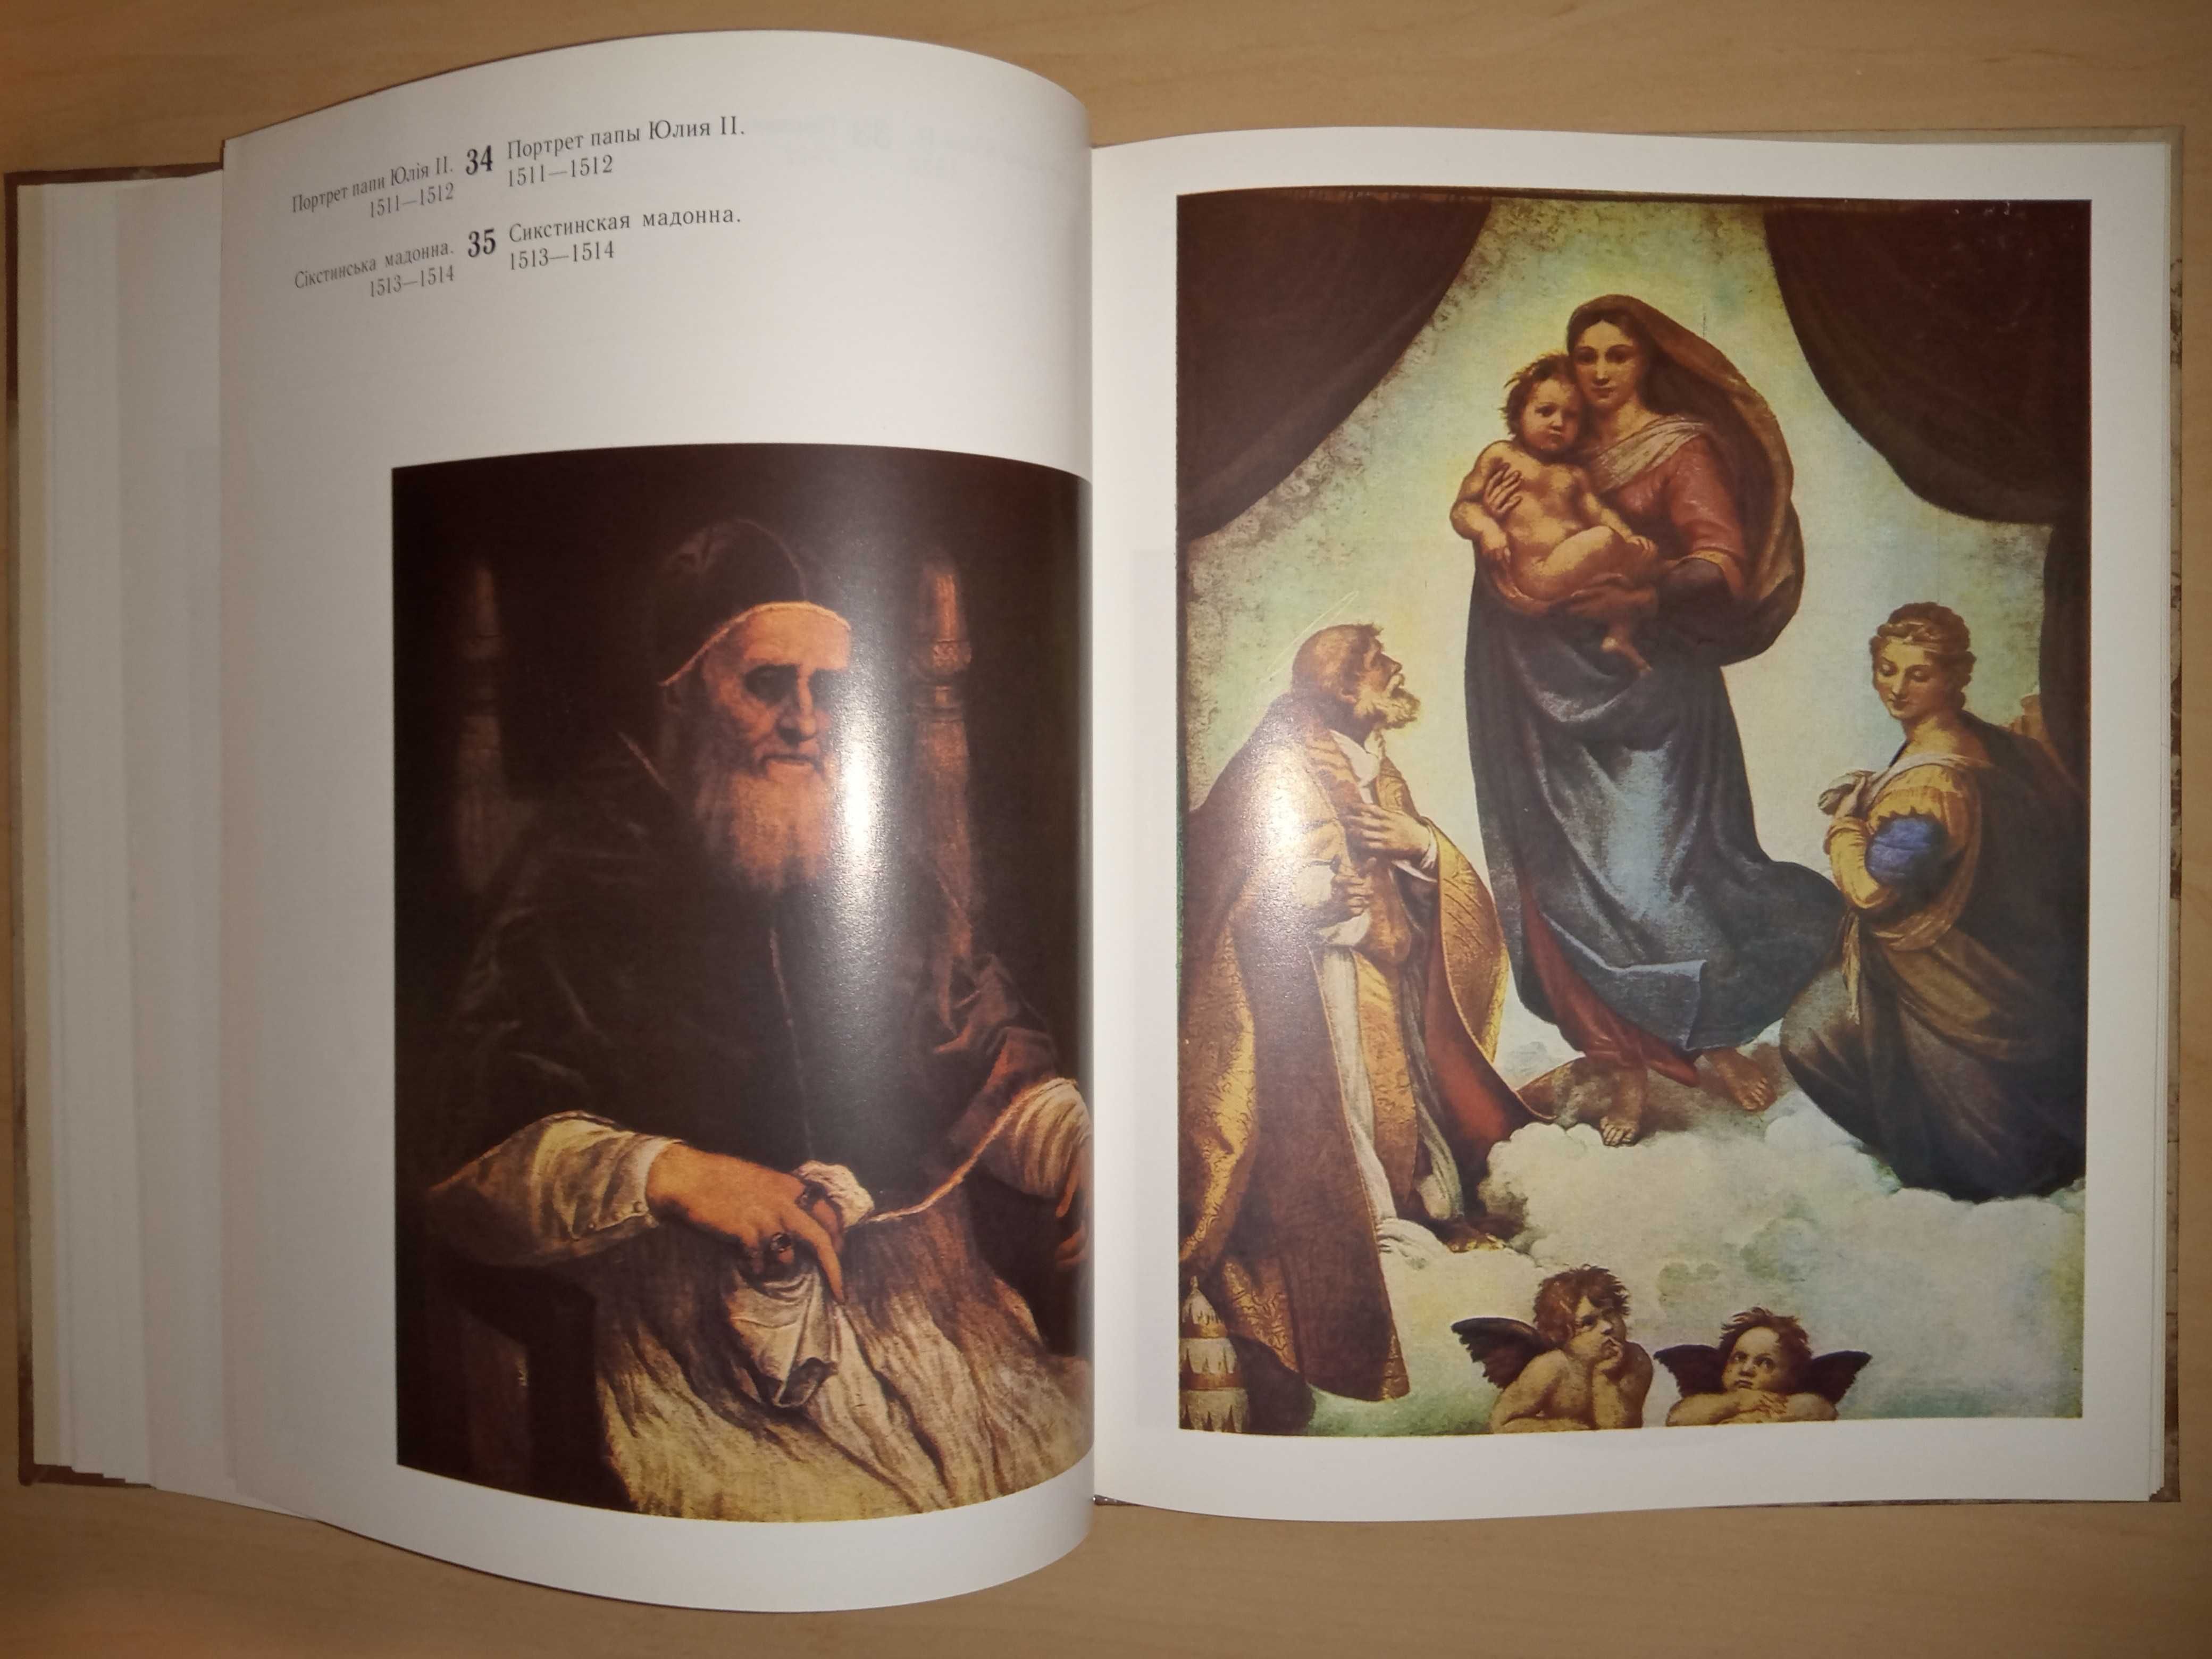 Рафаель (книга, 79 репродукцій картин, біографія, укр. та рос. мовами)